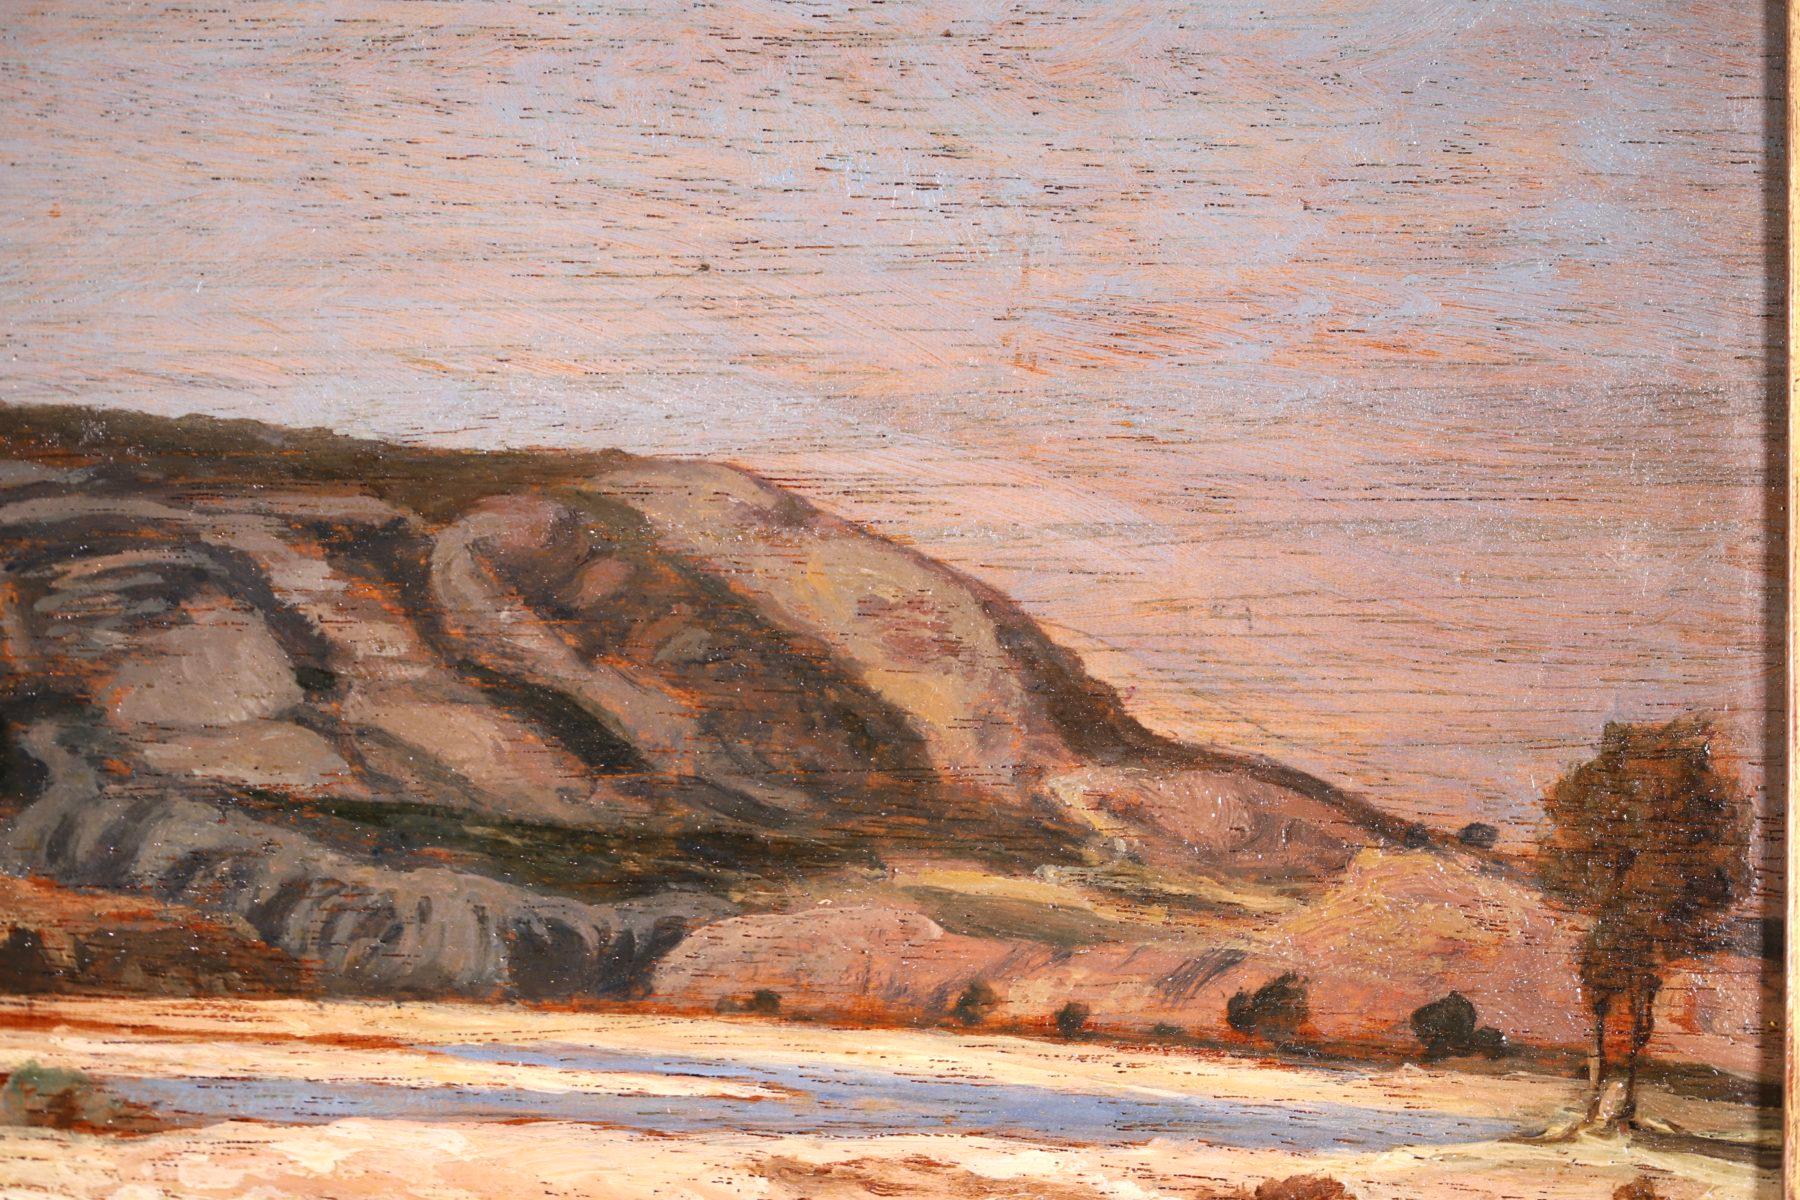 Paysage fluvial impressionniste signé, huile sur panneau datée de 1863 par le peintre français recherché Paul Camille Guigou. Cette pièce représente une vue de la rivière à Saint-Paul-ls-Durance à Bouche-due-Rhone, dans le sud de la France, par une